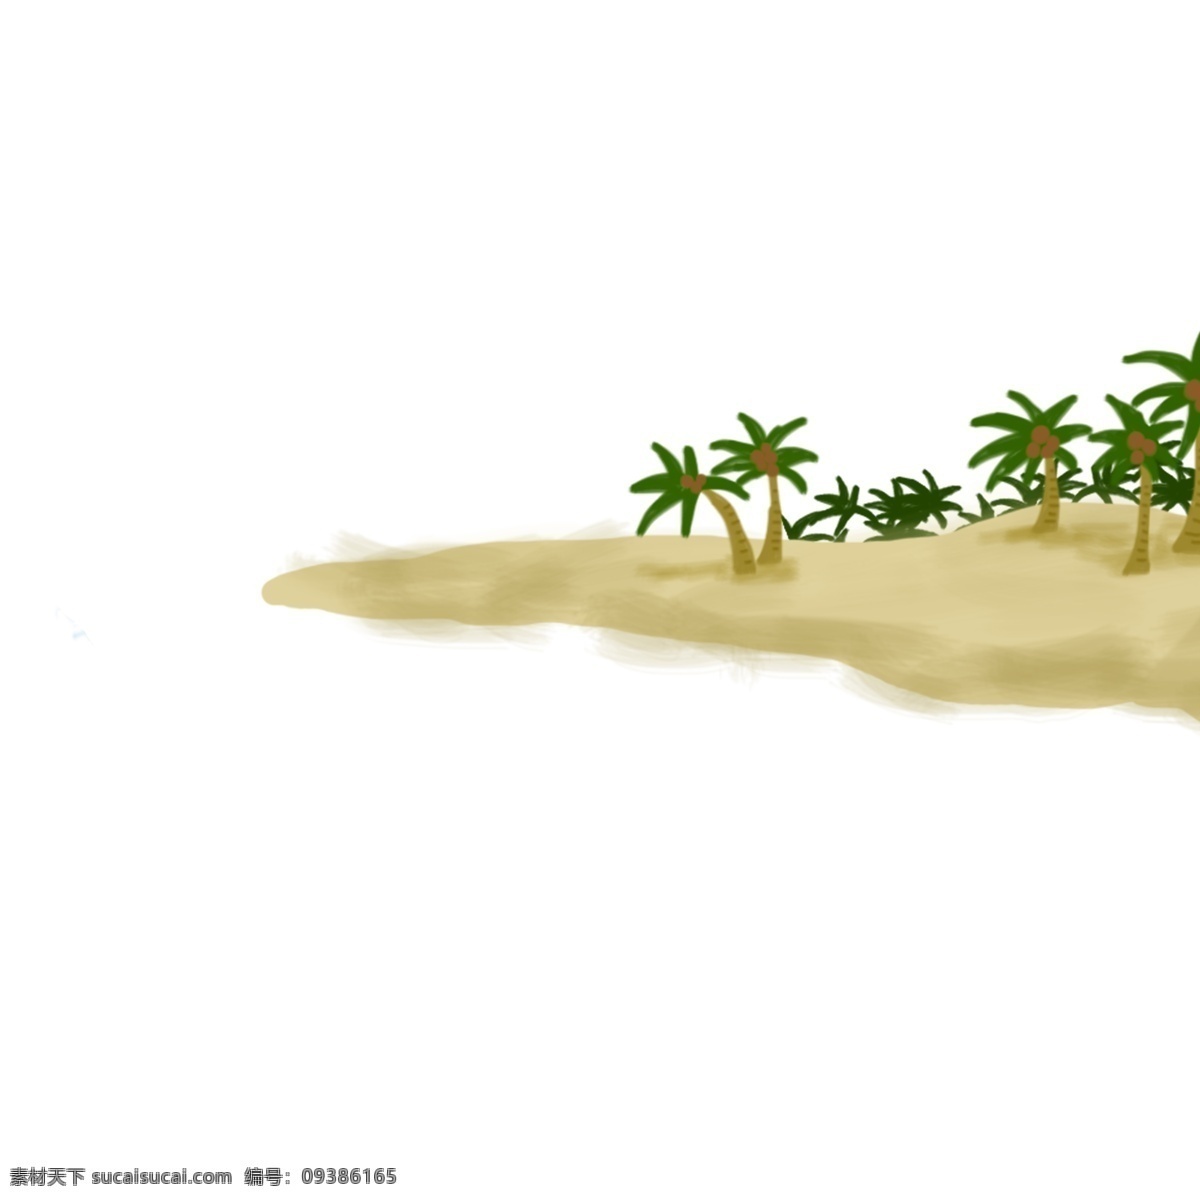 春天 夏天 海边 沙滩 度假 浅滩 岛屿 椰子树 手绘 插画 小岛 大海 卡通 沙子 休闲